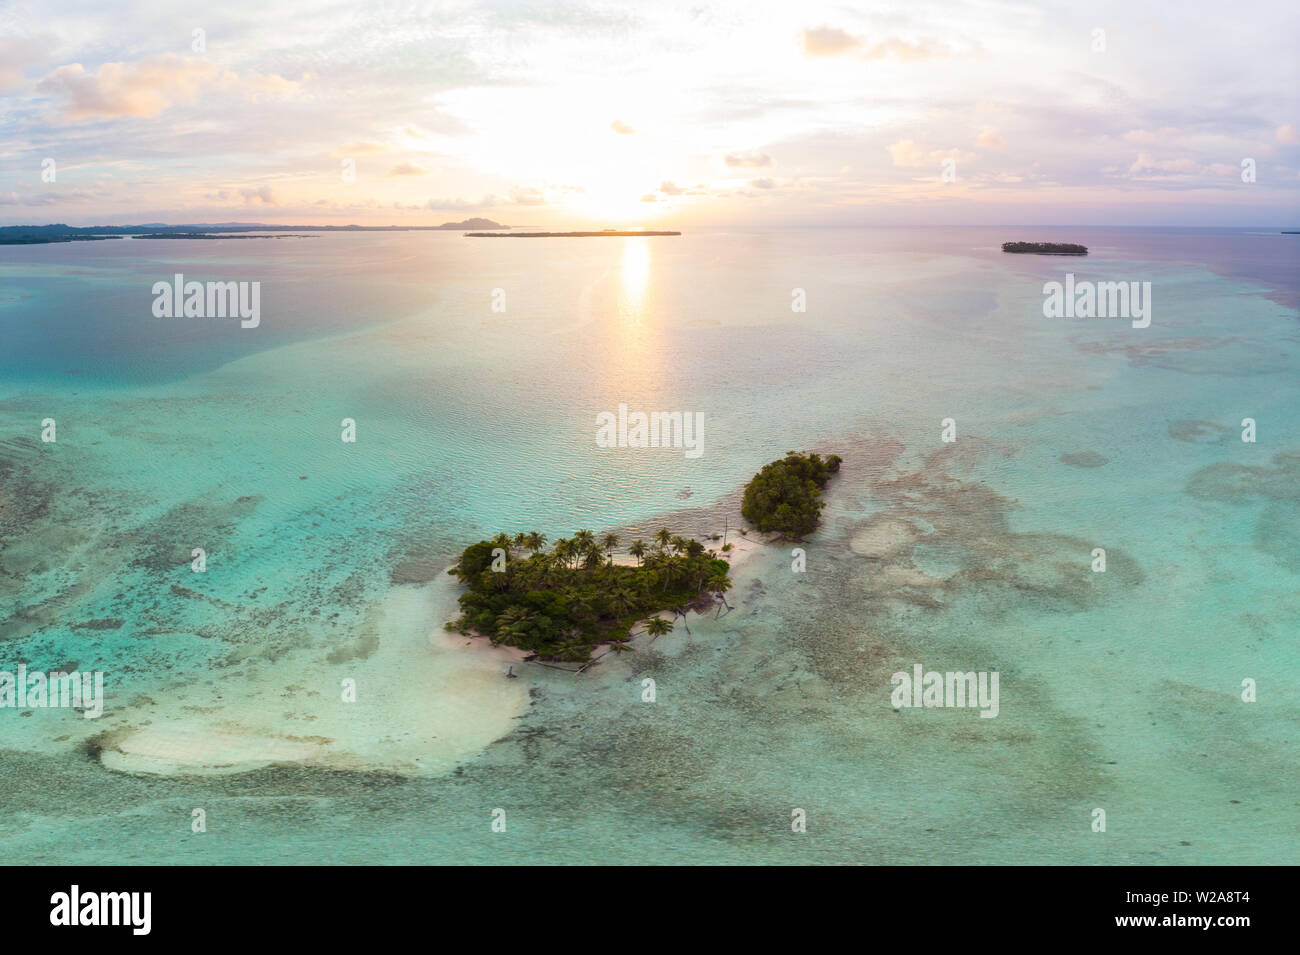 Luftaufnahme Banyak Inseln Sumatra tropischen Archipel in Indonesien, Coral Reef dramatische Himmel Sonnenuntergang. Reiseziel, Tauchen Schnorcheln, uncontaminat Stockfoto